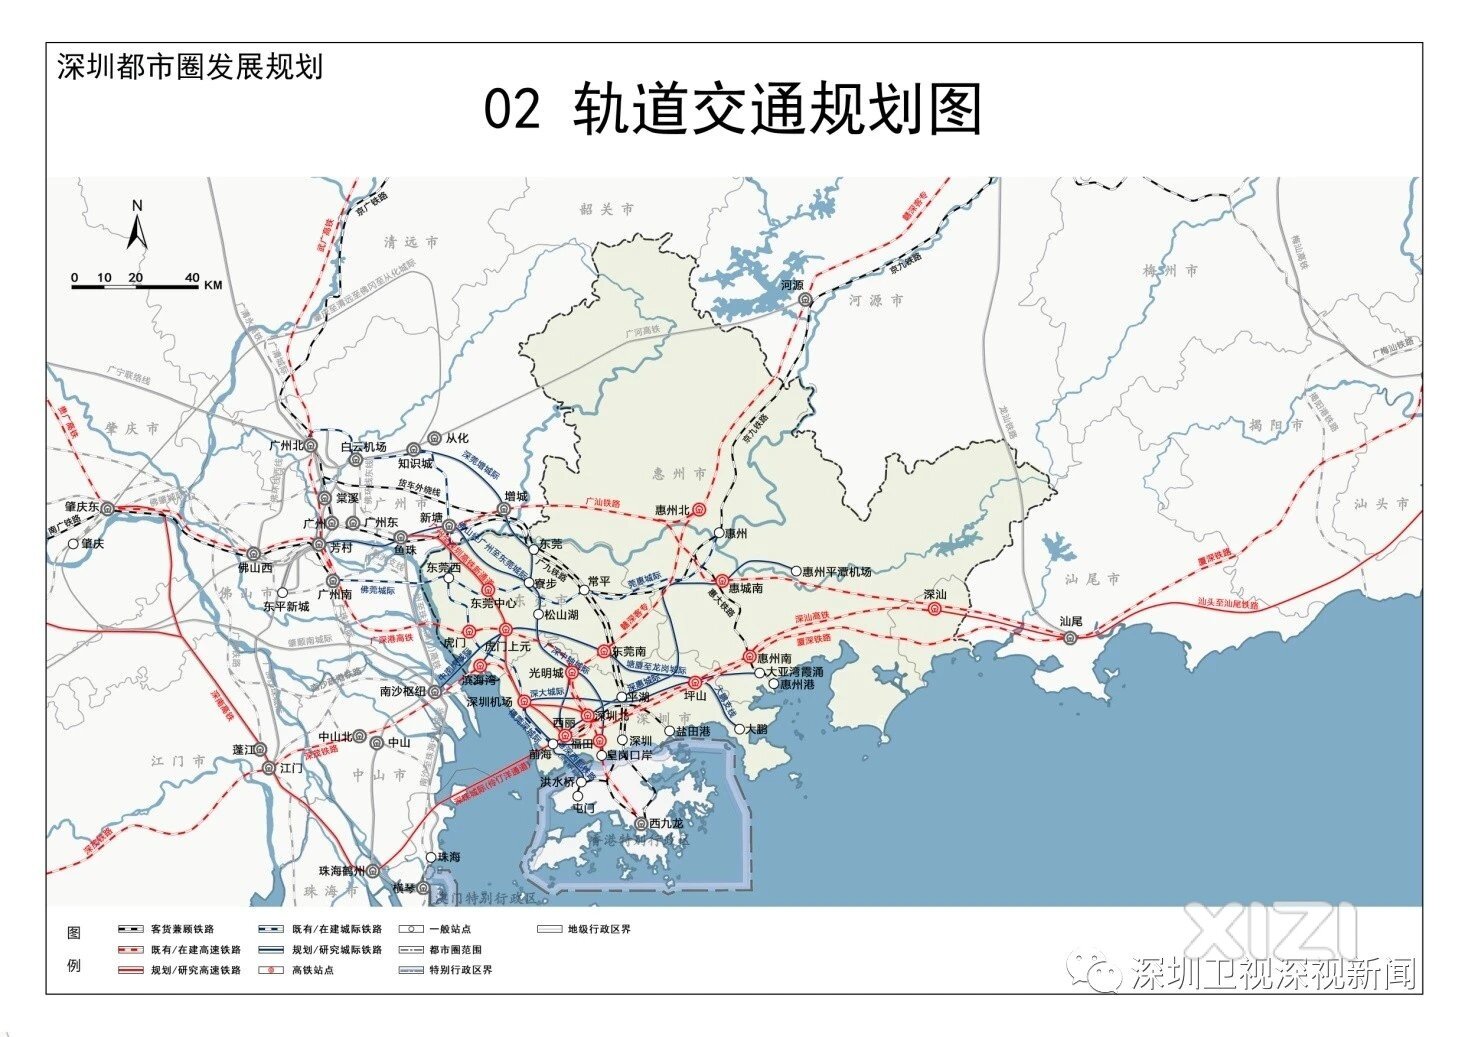 深圳都市圈发布:没有规划地铁了。还是之前2条深圳城轨延伸到惠州